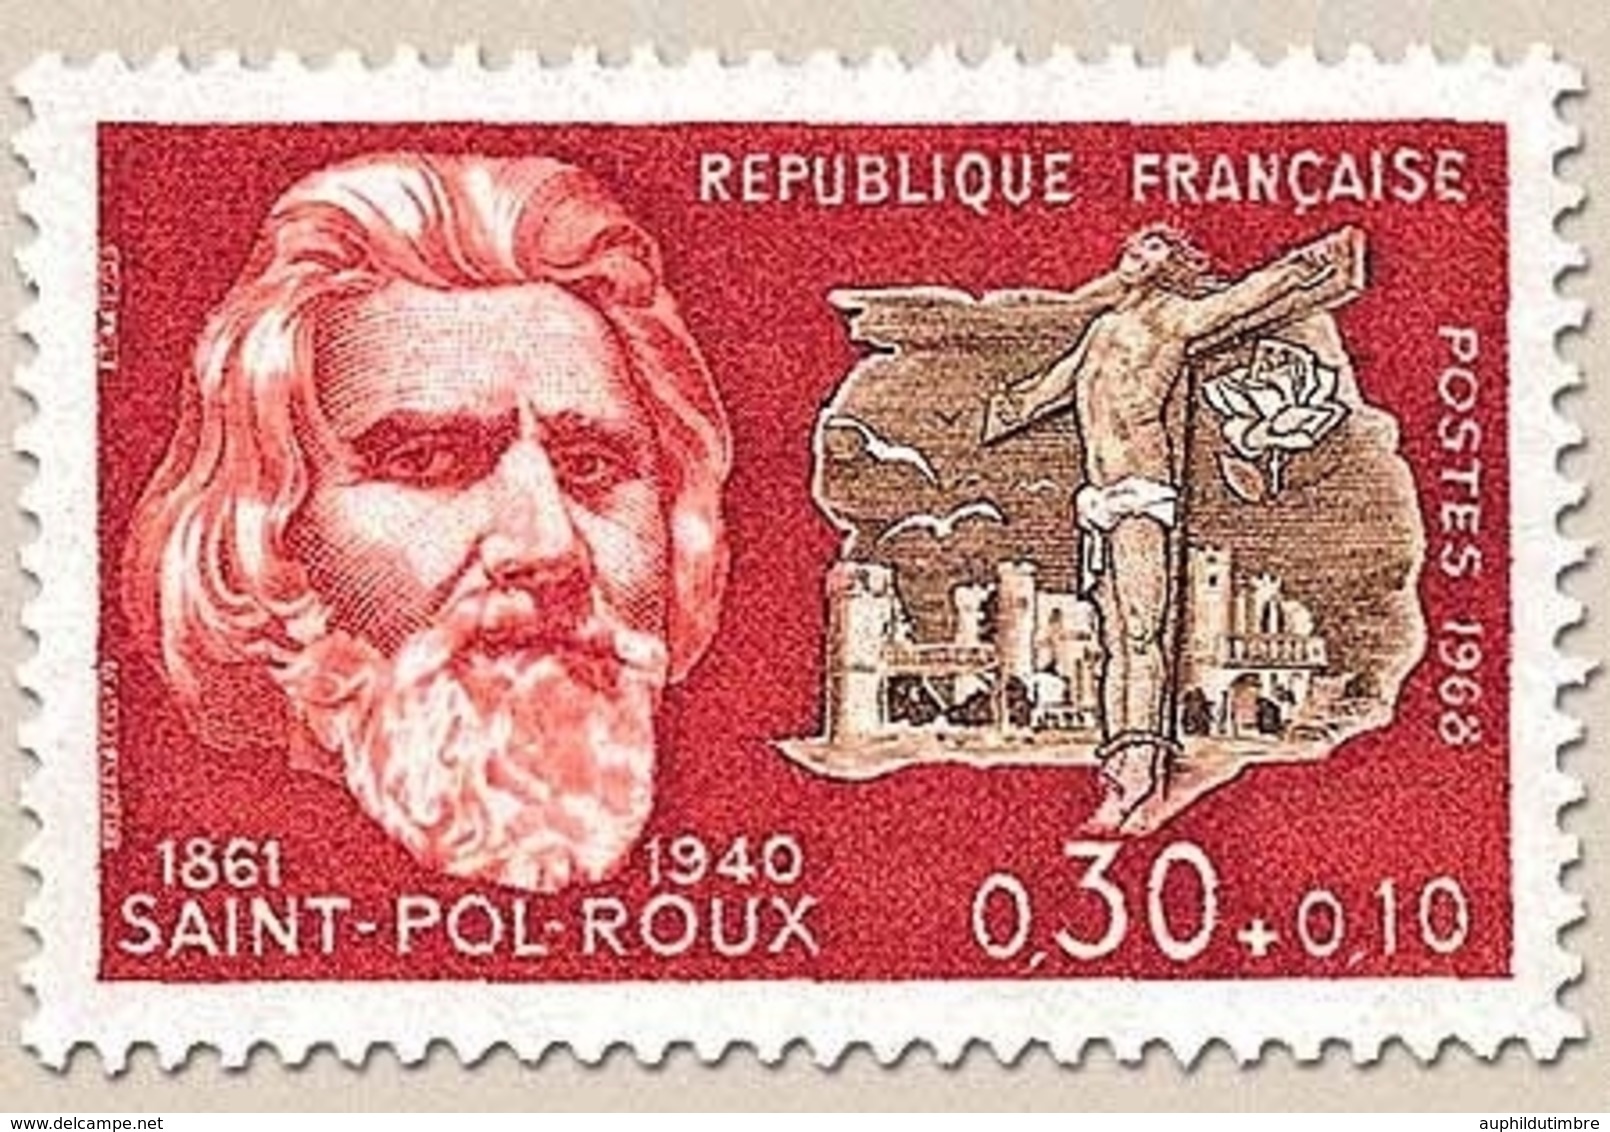 Célébrités. Paul-Pierre Roux, Dit Saint-Pol-Roux, Et Golgotha 30c. + 10c. Bistre-rouge Et Sépia Y1552 - Nuovi